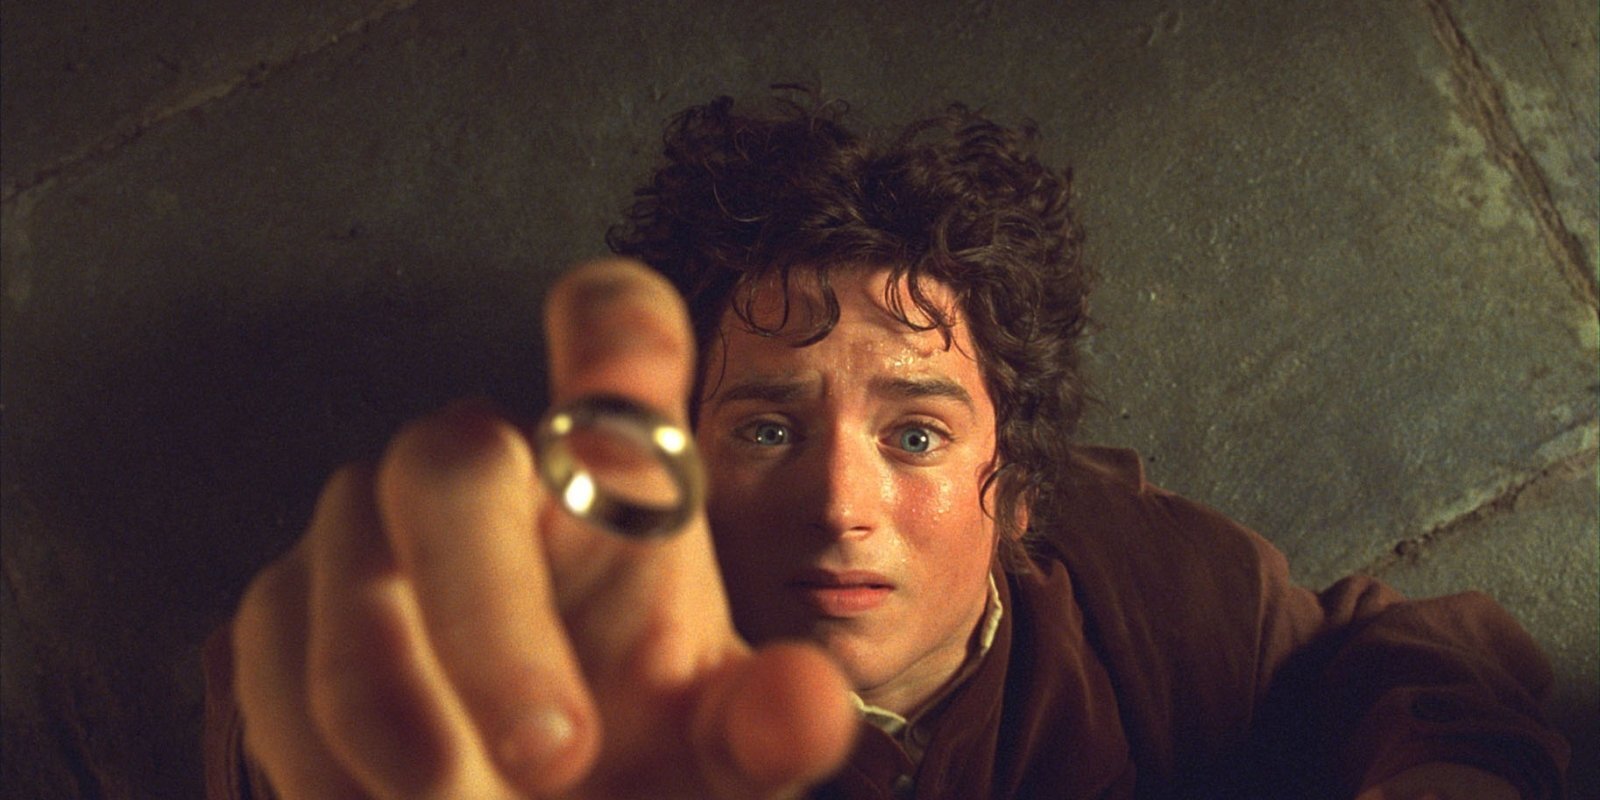 Seriāls 'The Lord of the Rings' kļūs par dārgāko vēsturē